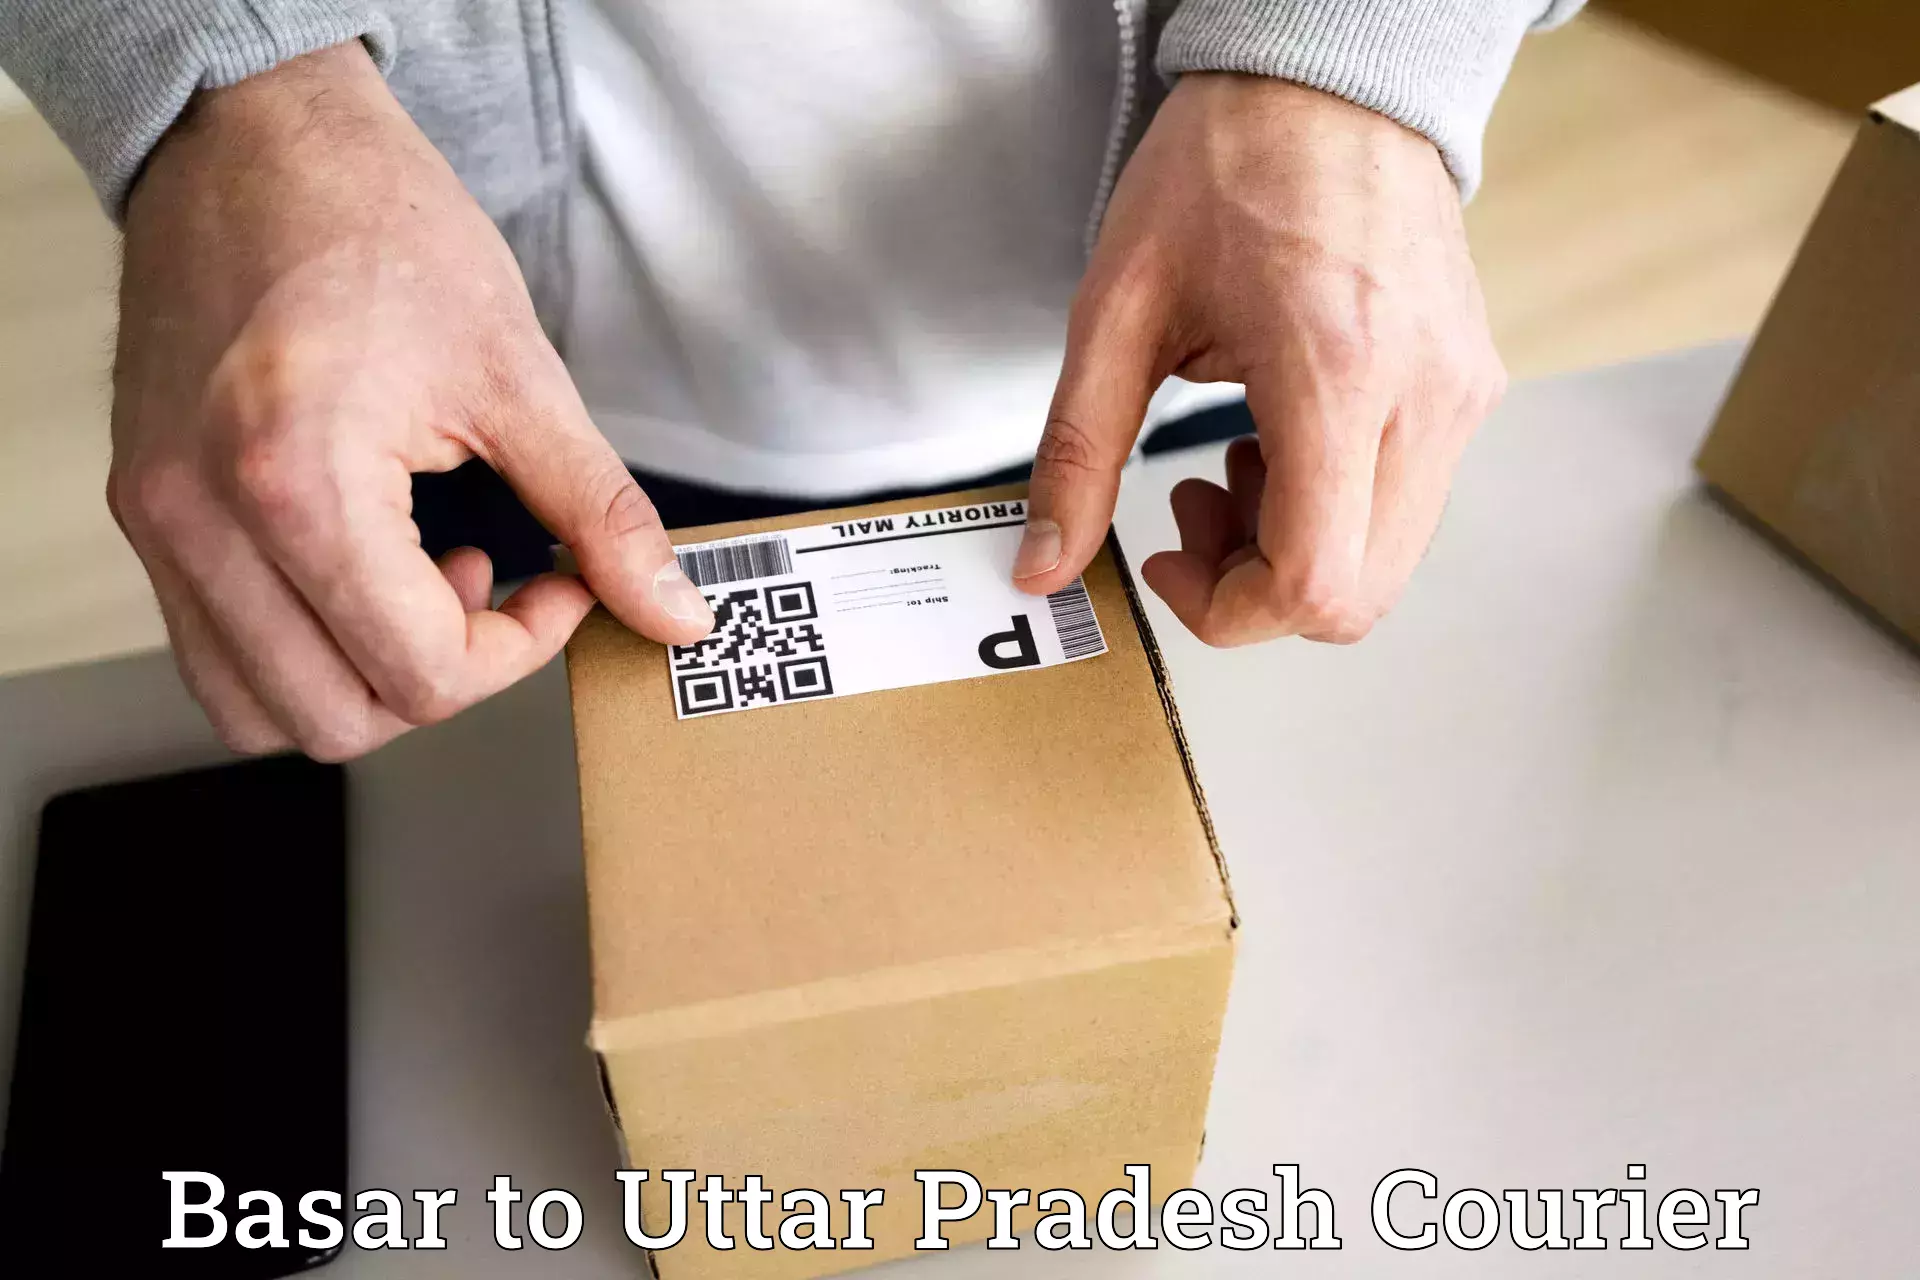 Global parcel delivery Basar to Mishrikh